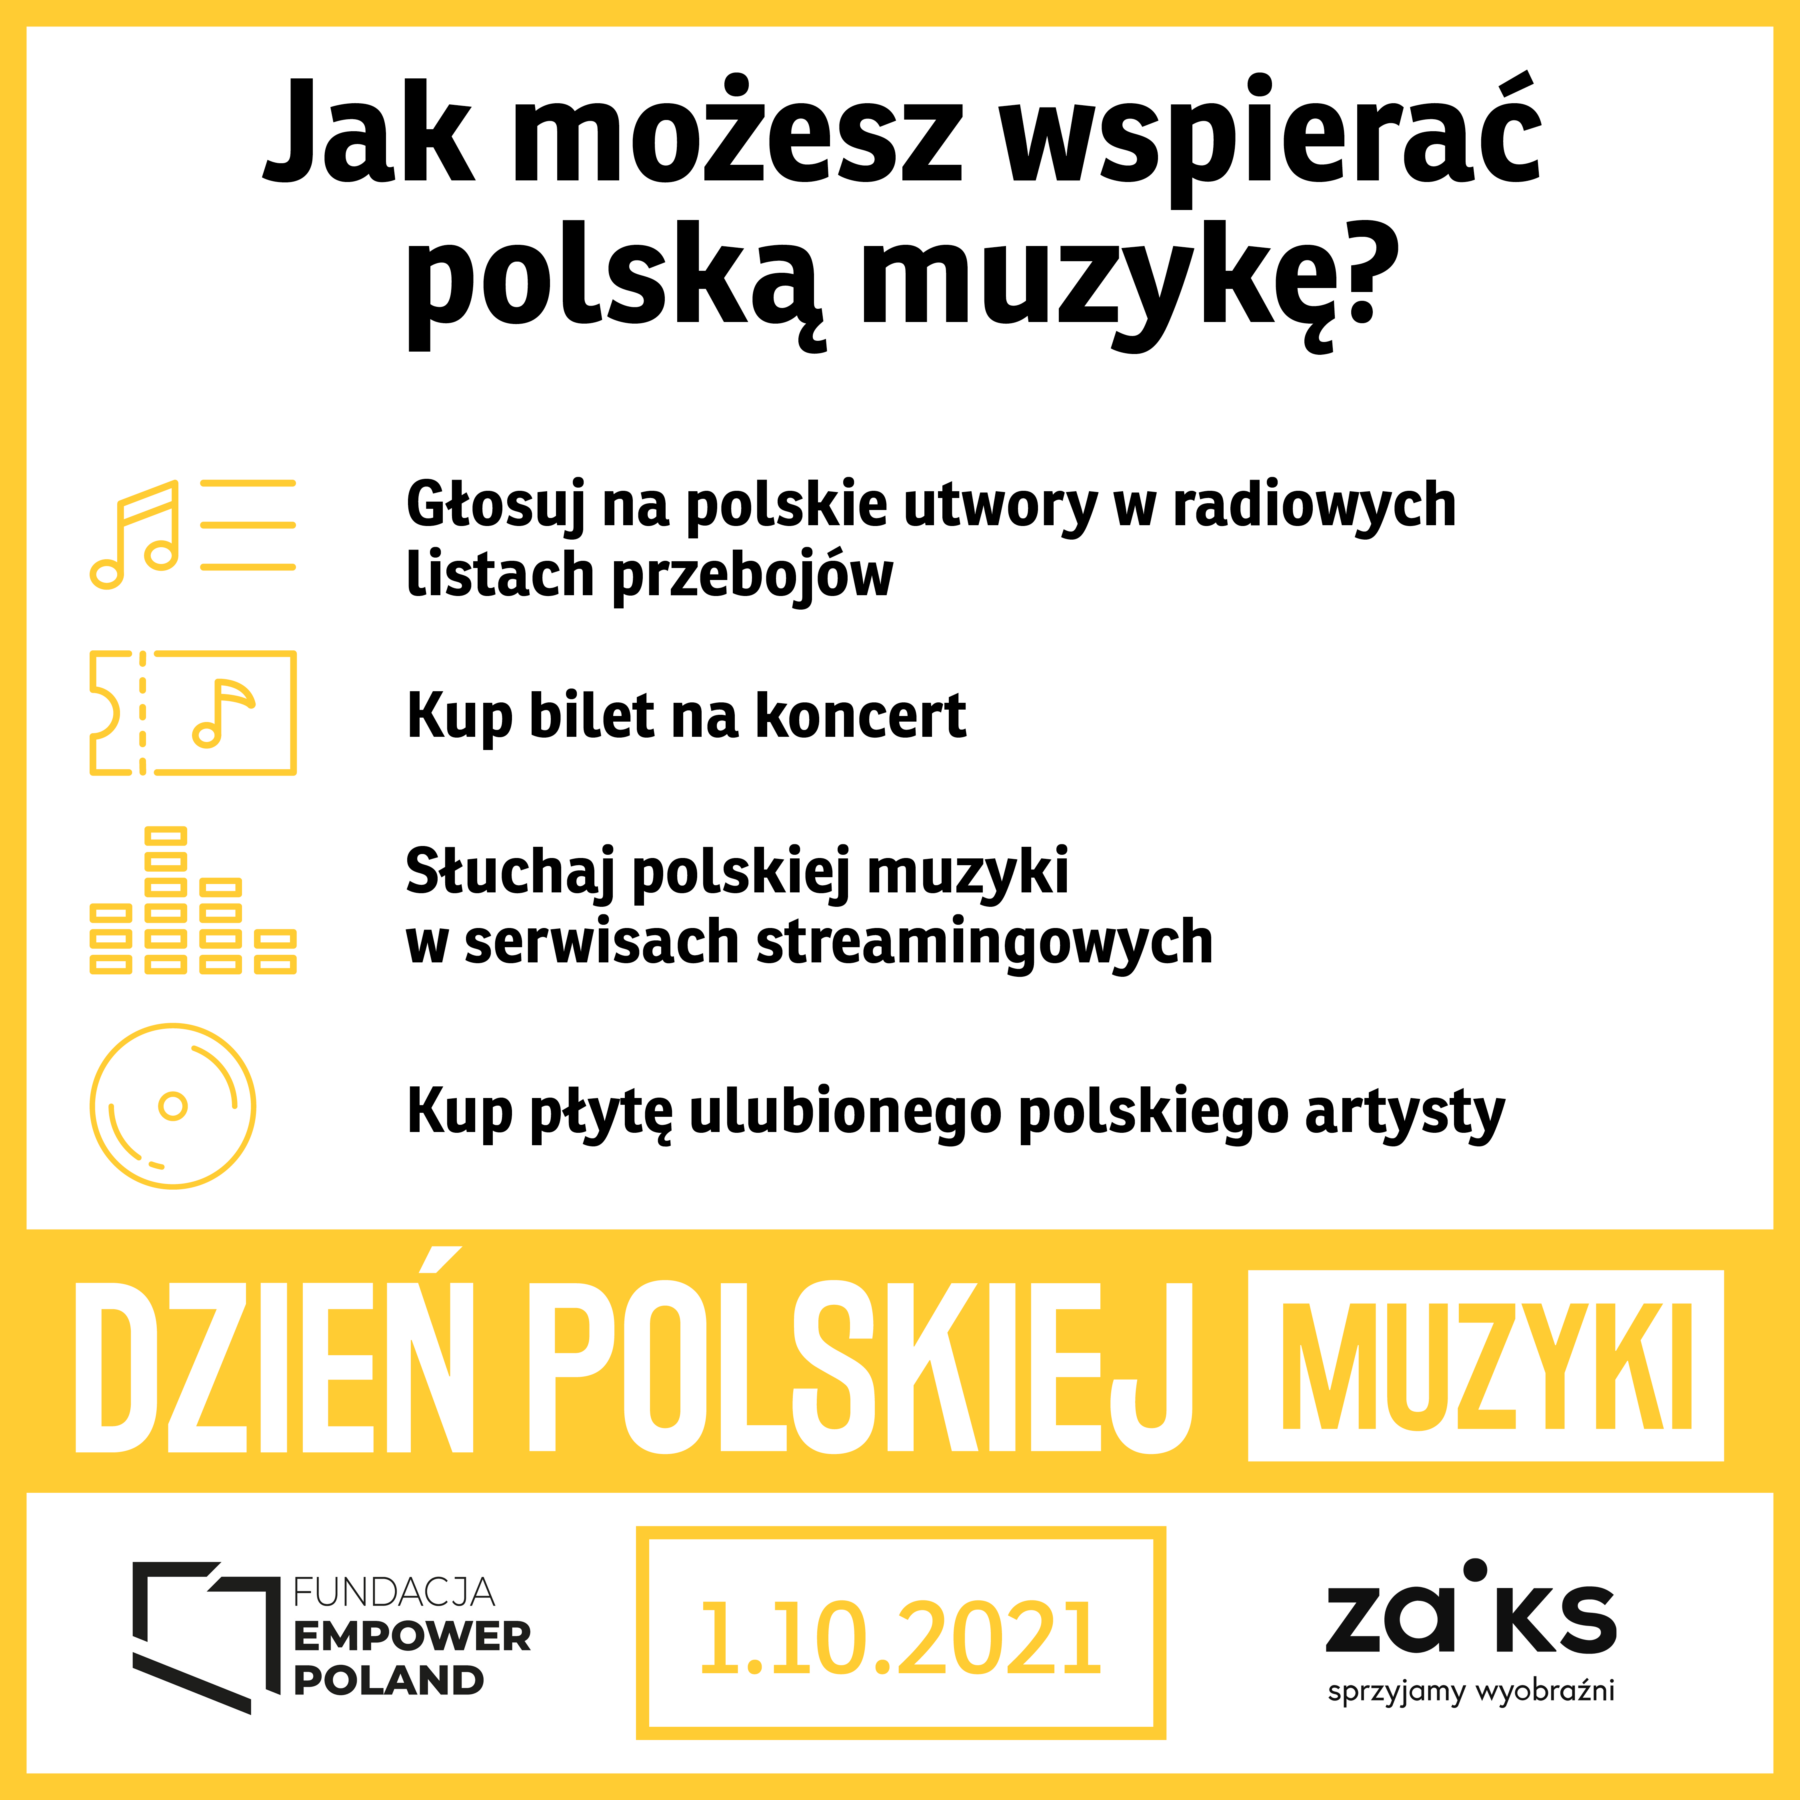 DPM Jak wspierac polska muzyke